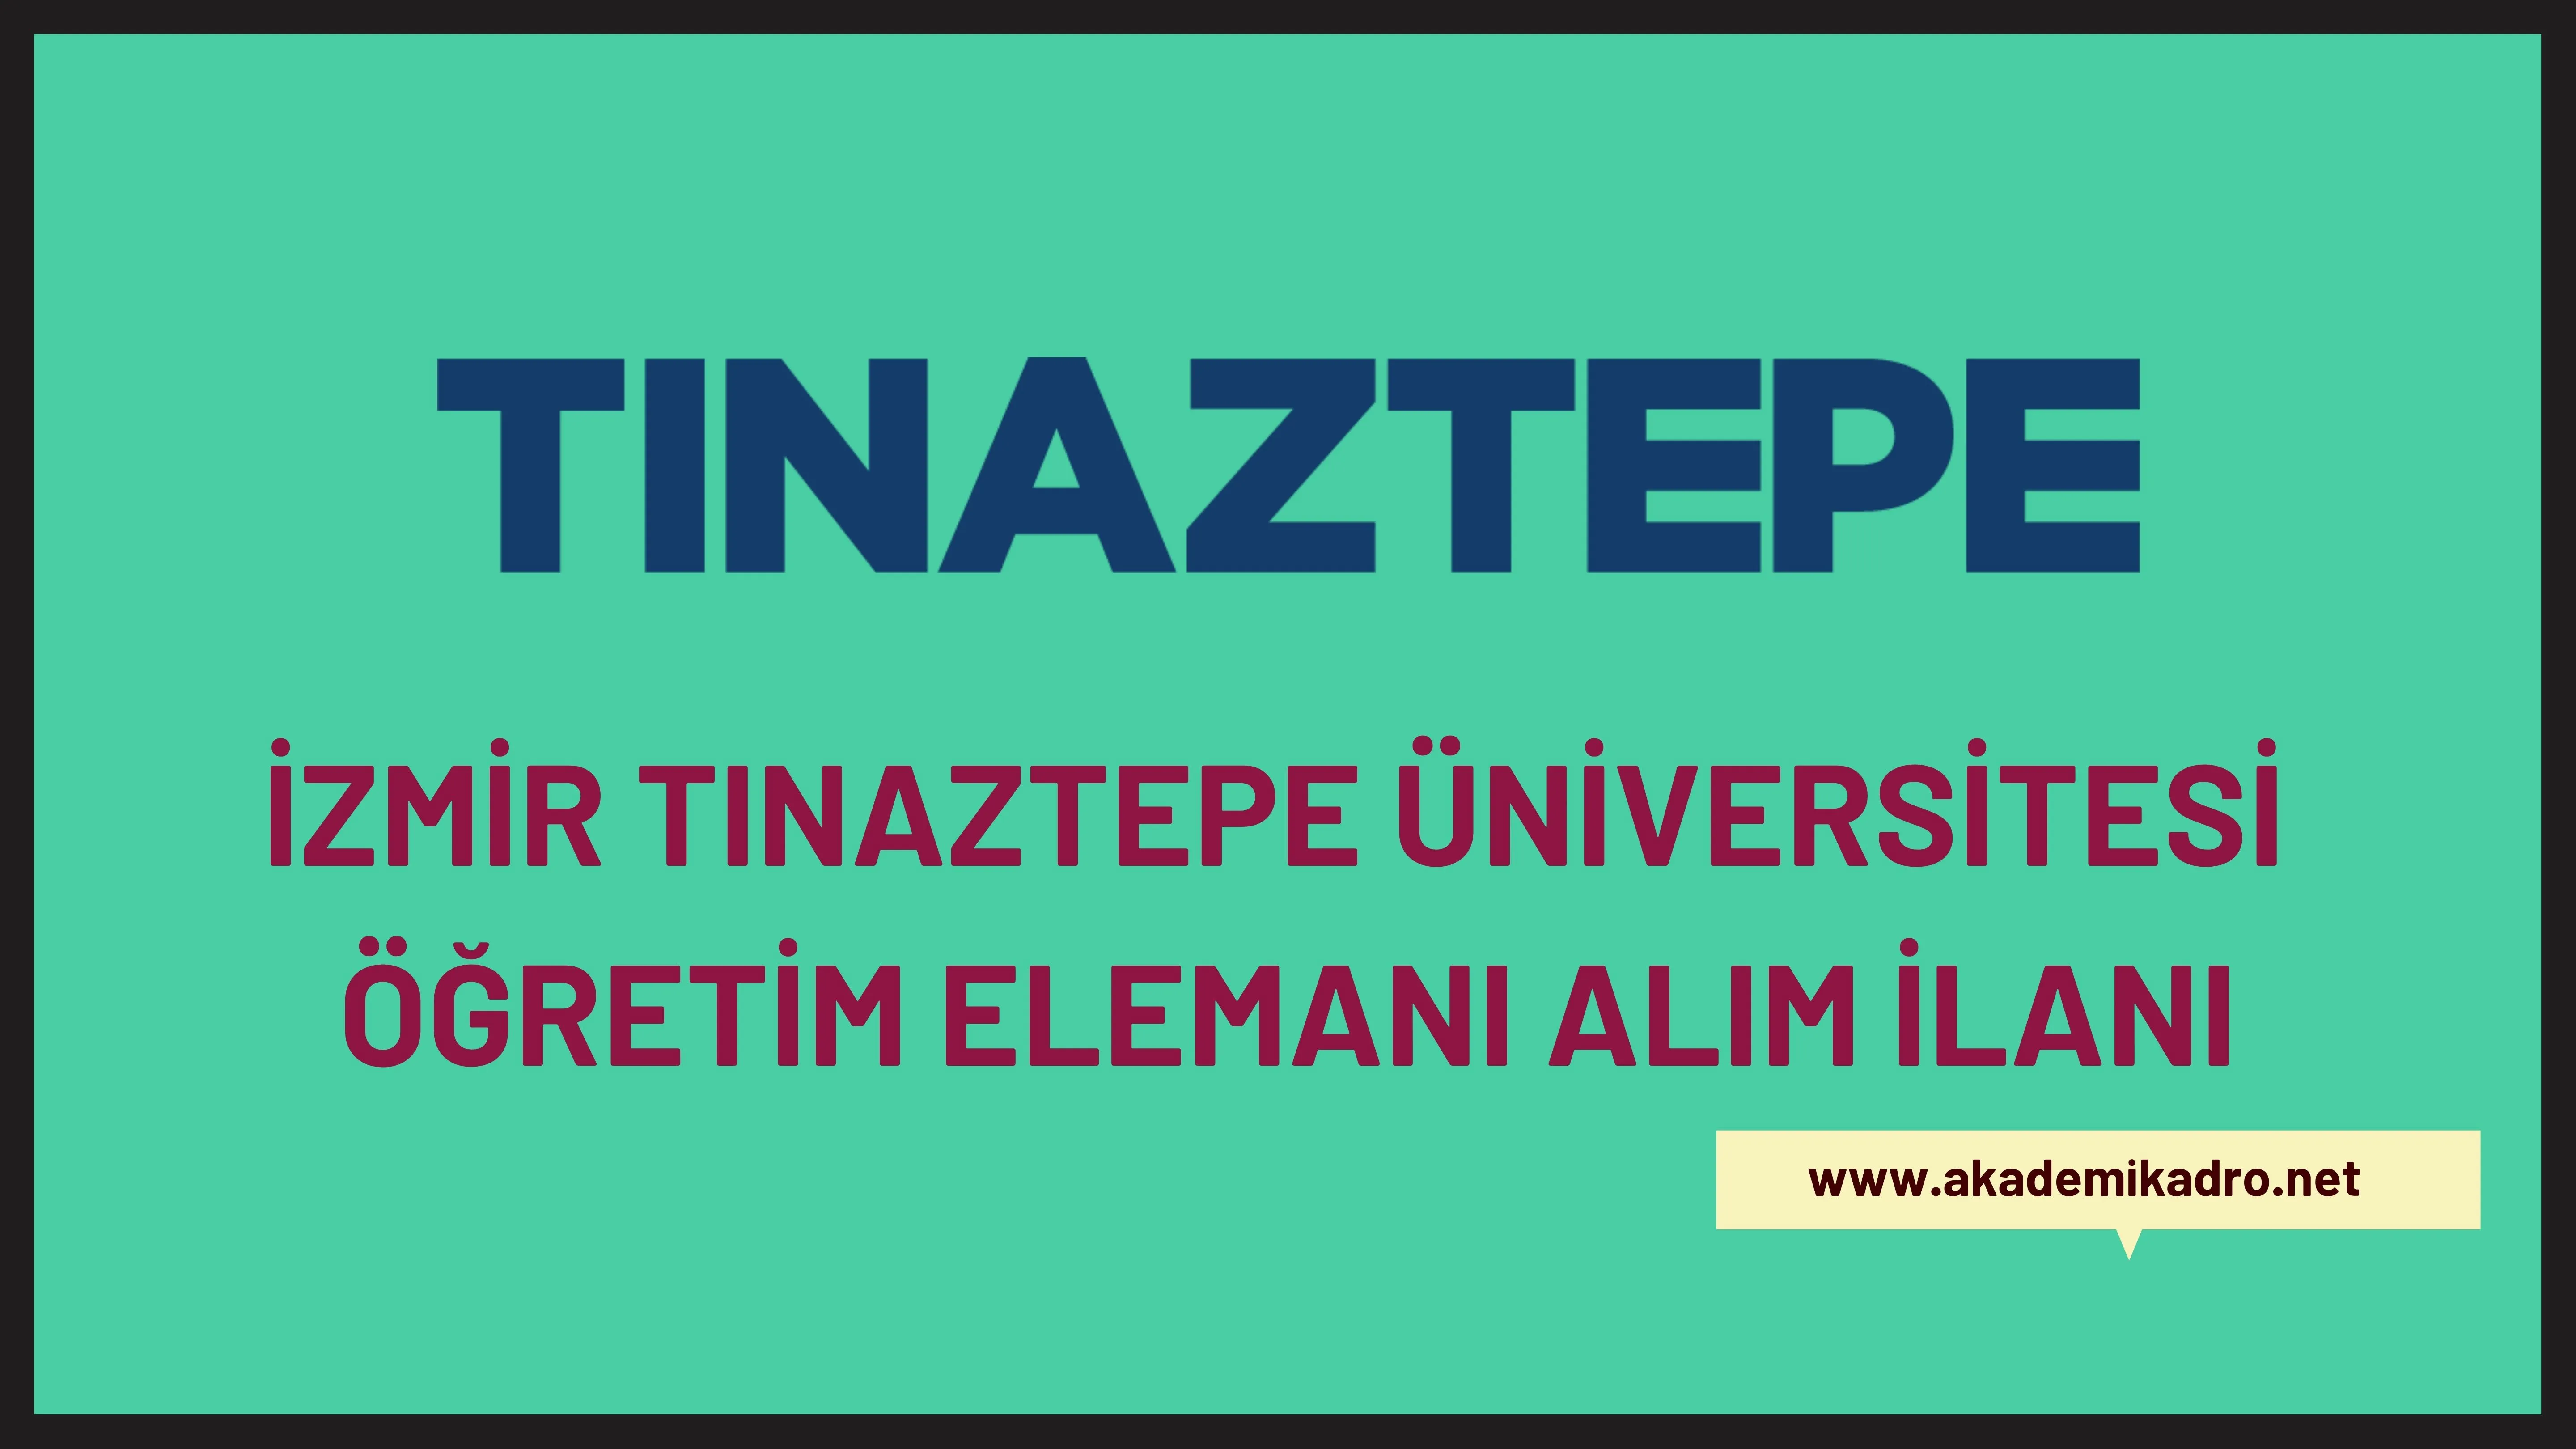 İzmir Tınaztepe Üniversitesi Araştırma görevlisi, Öğretim görevlisi ve birçok alandan Öğretim üyesi olmak üzere 56 Öğretim elemanı alacak. Son başvuru tarihi 20 Ocak 2023.